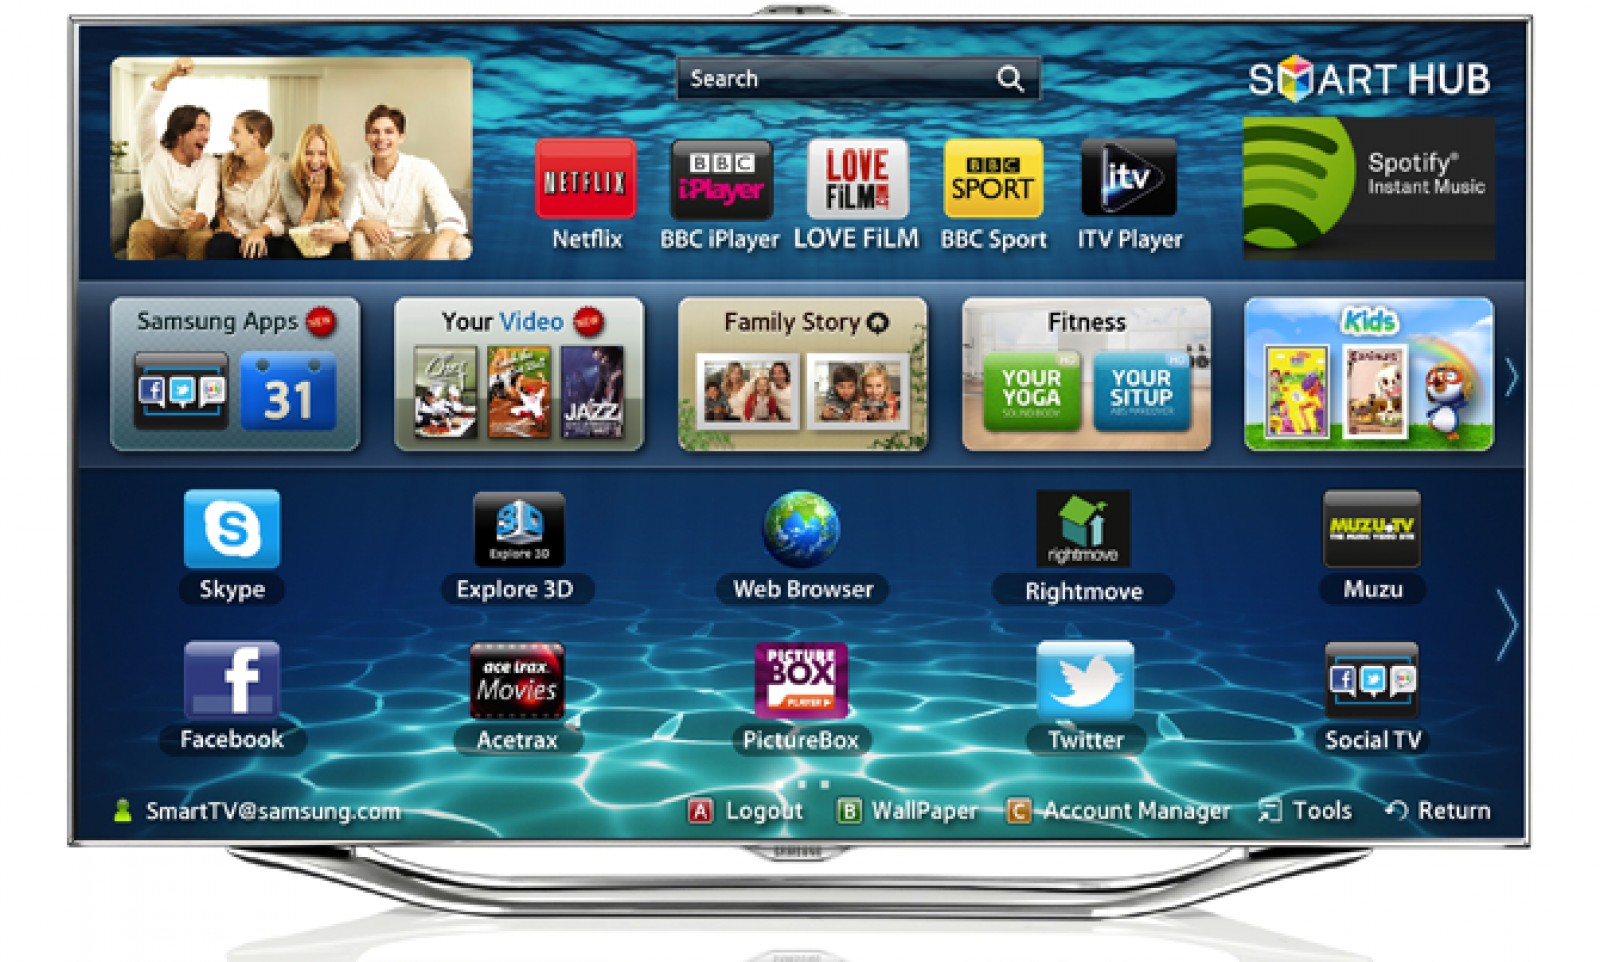 Etapa 2: Reinicie a TV e os dispositivos conectados
Etapa 3: Atualize o software da TV